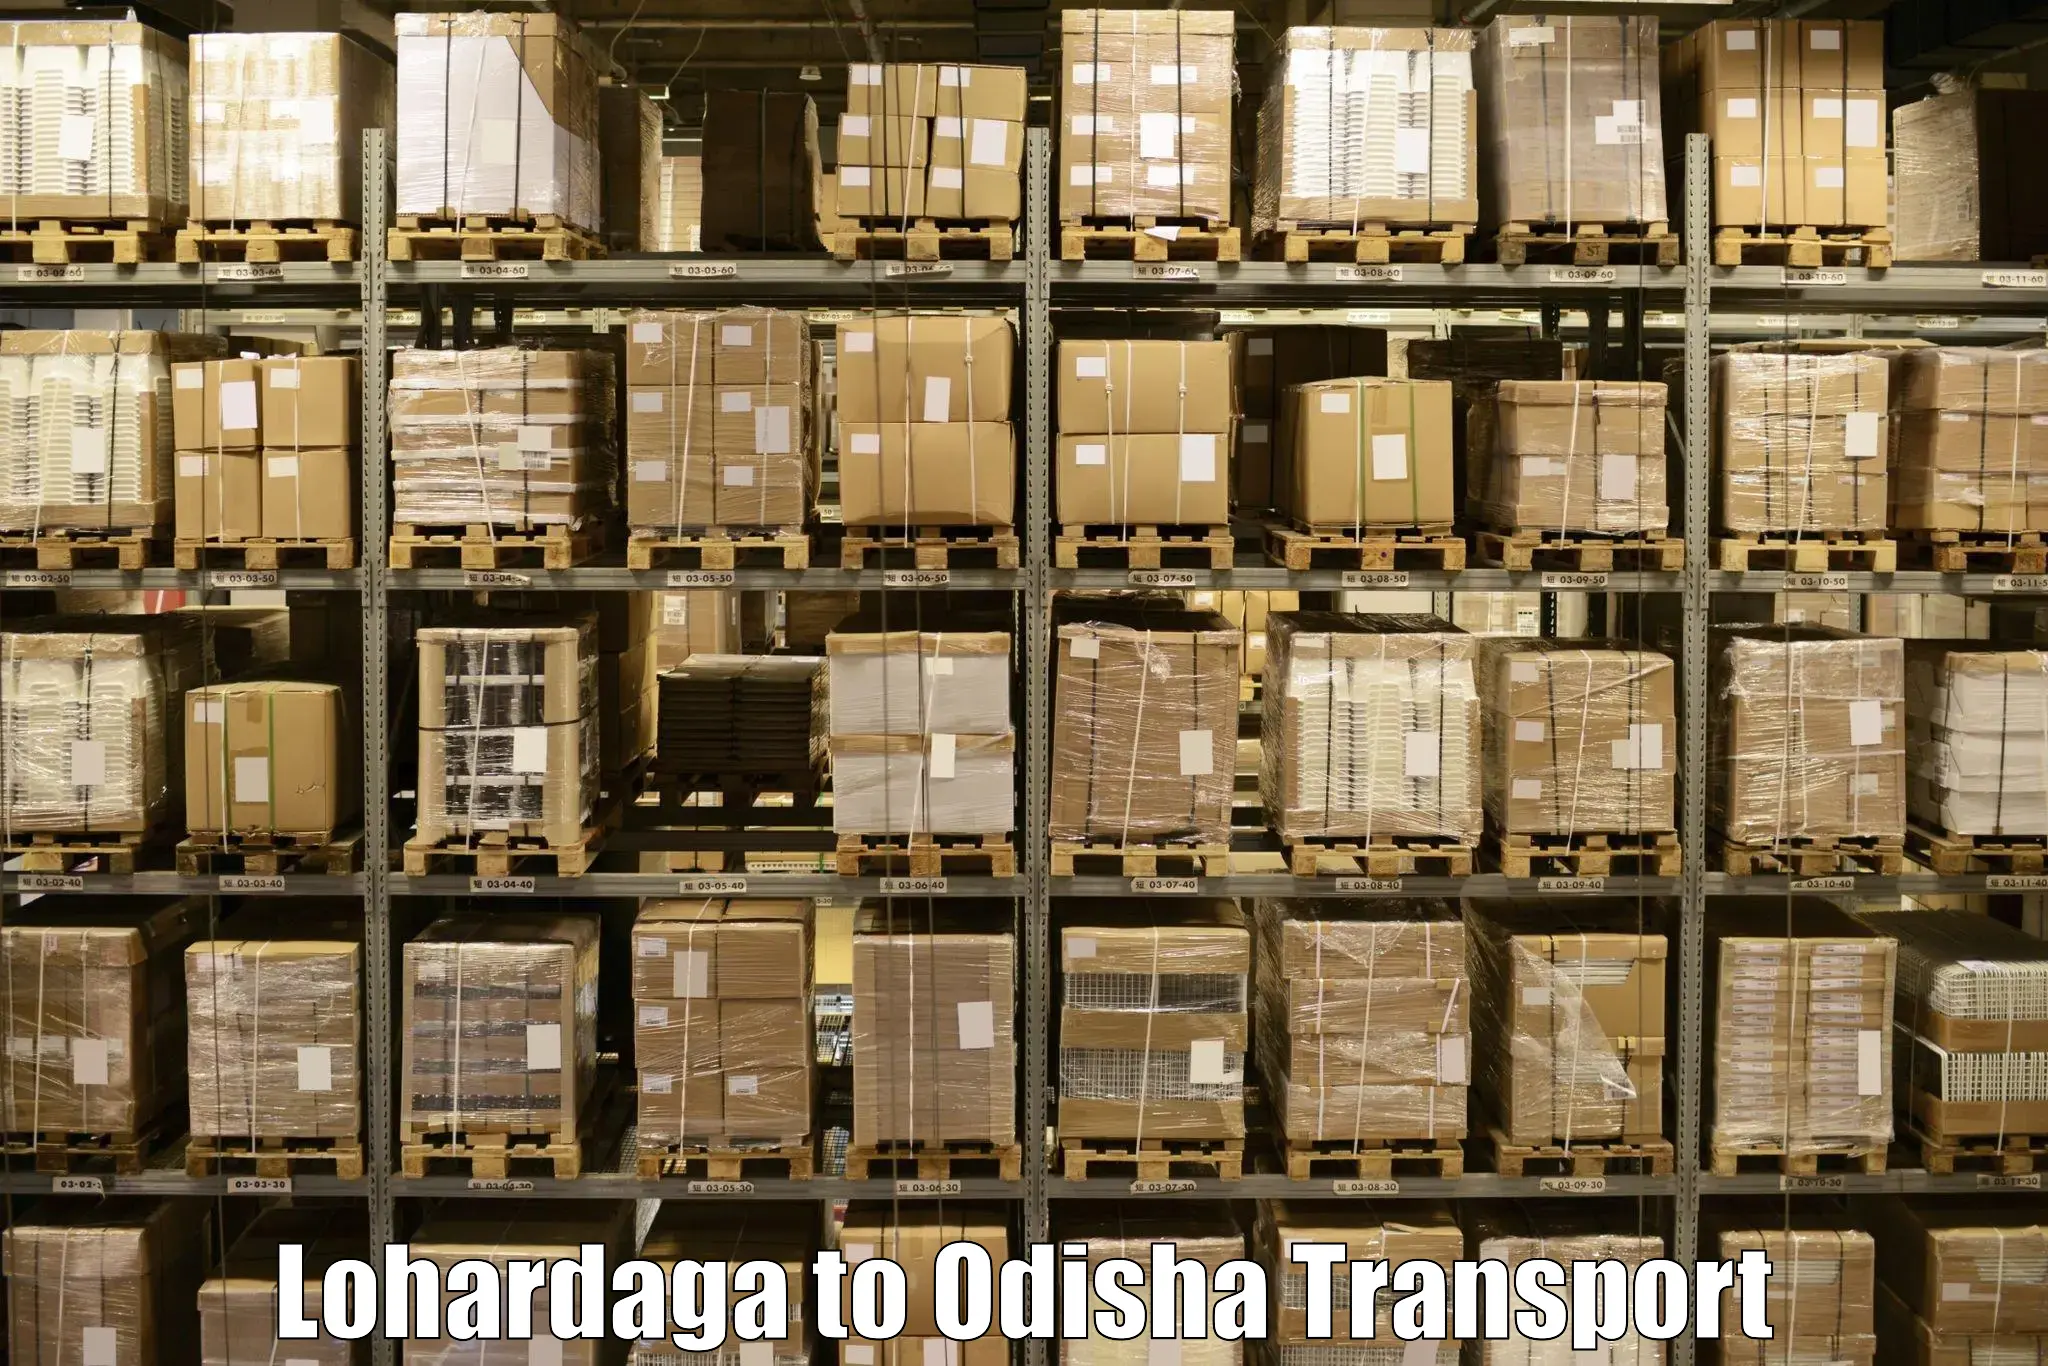 Nationwide transport services Lohardaga to Jaipatna